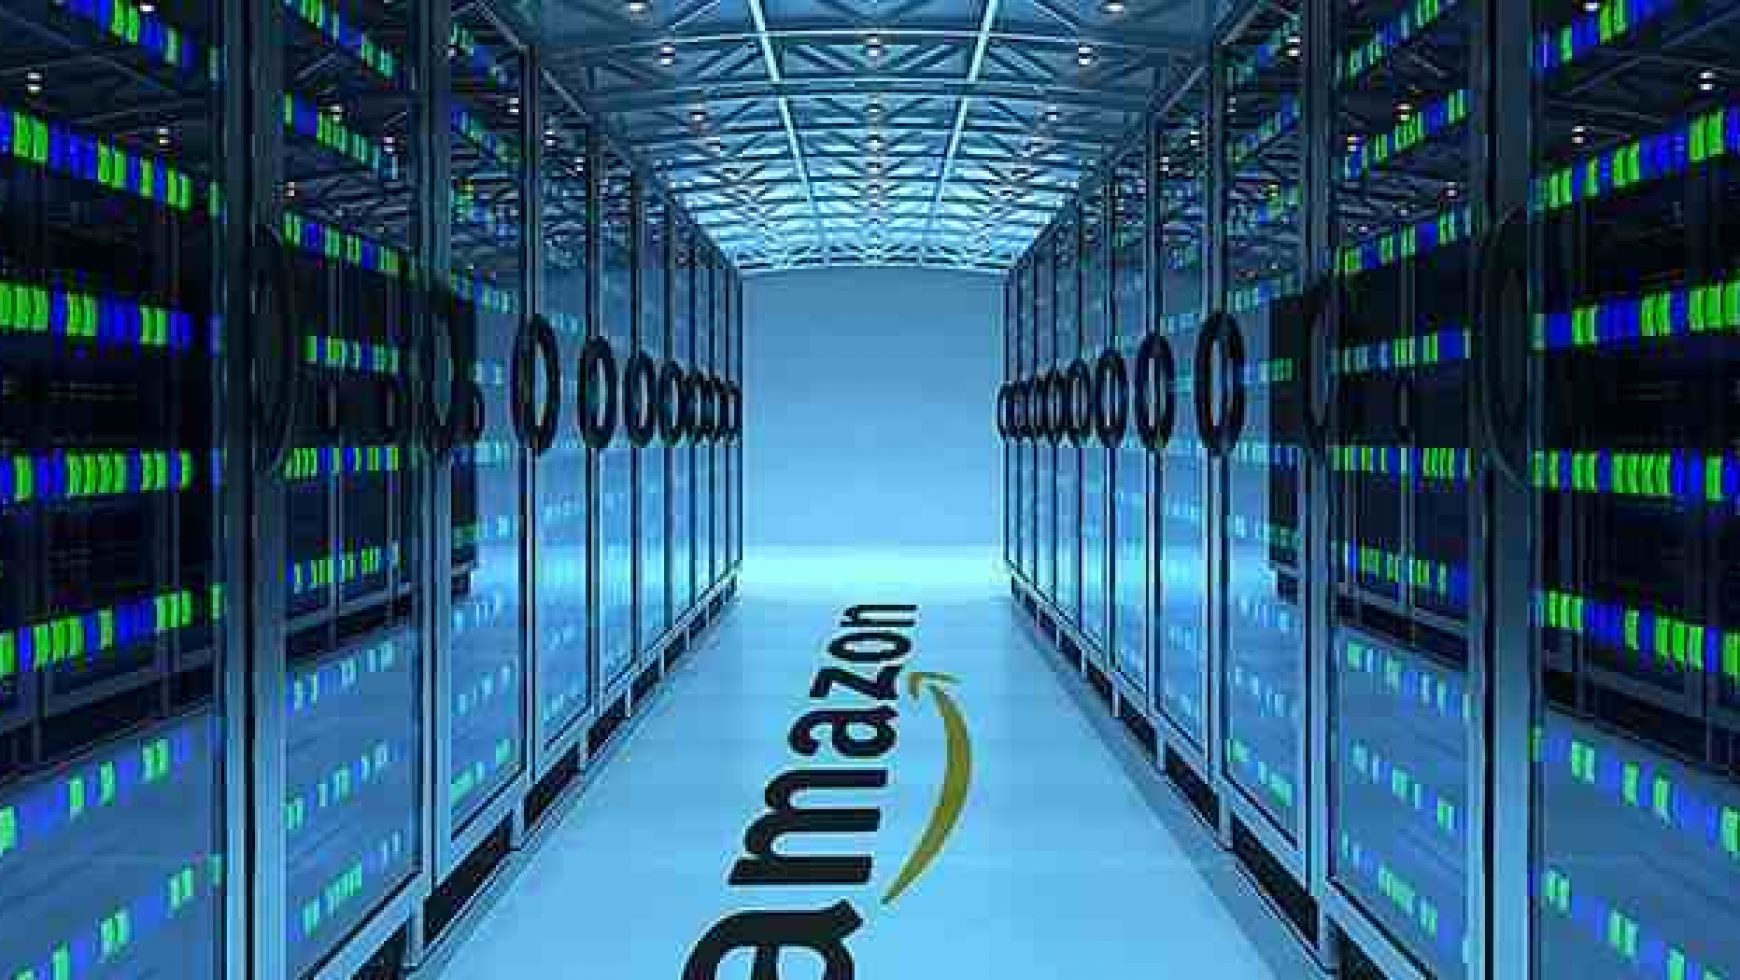 Amazon Servers